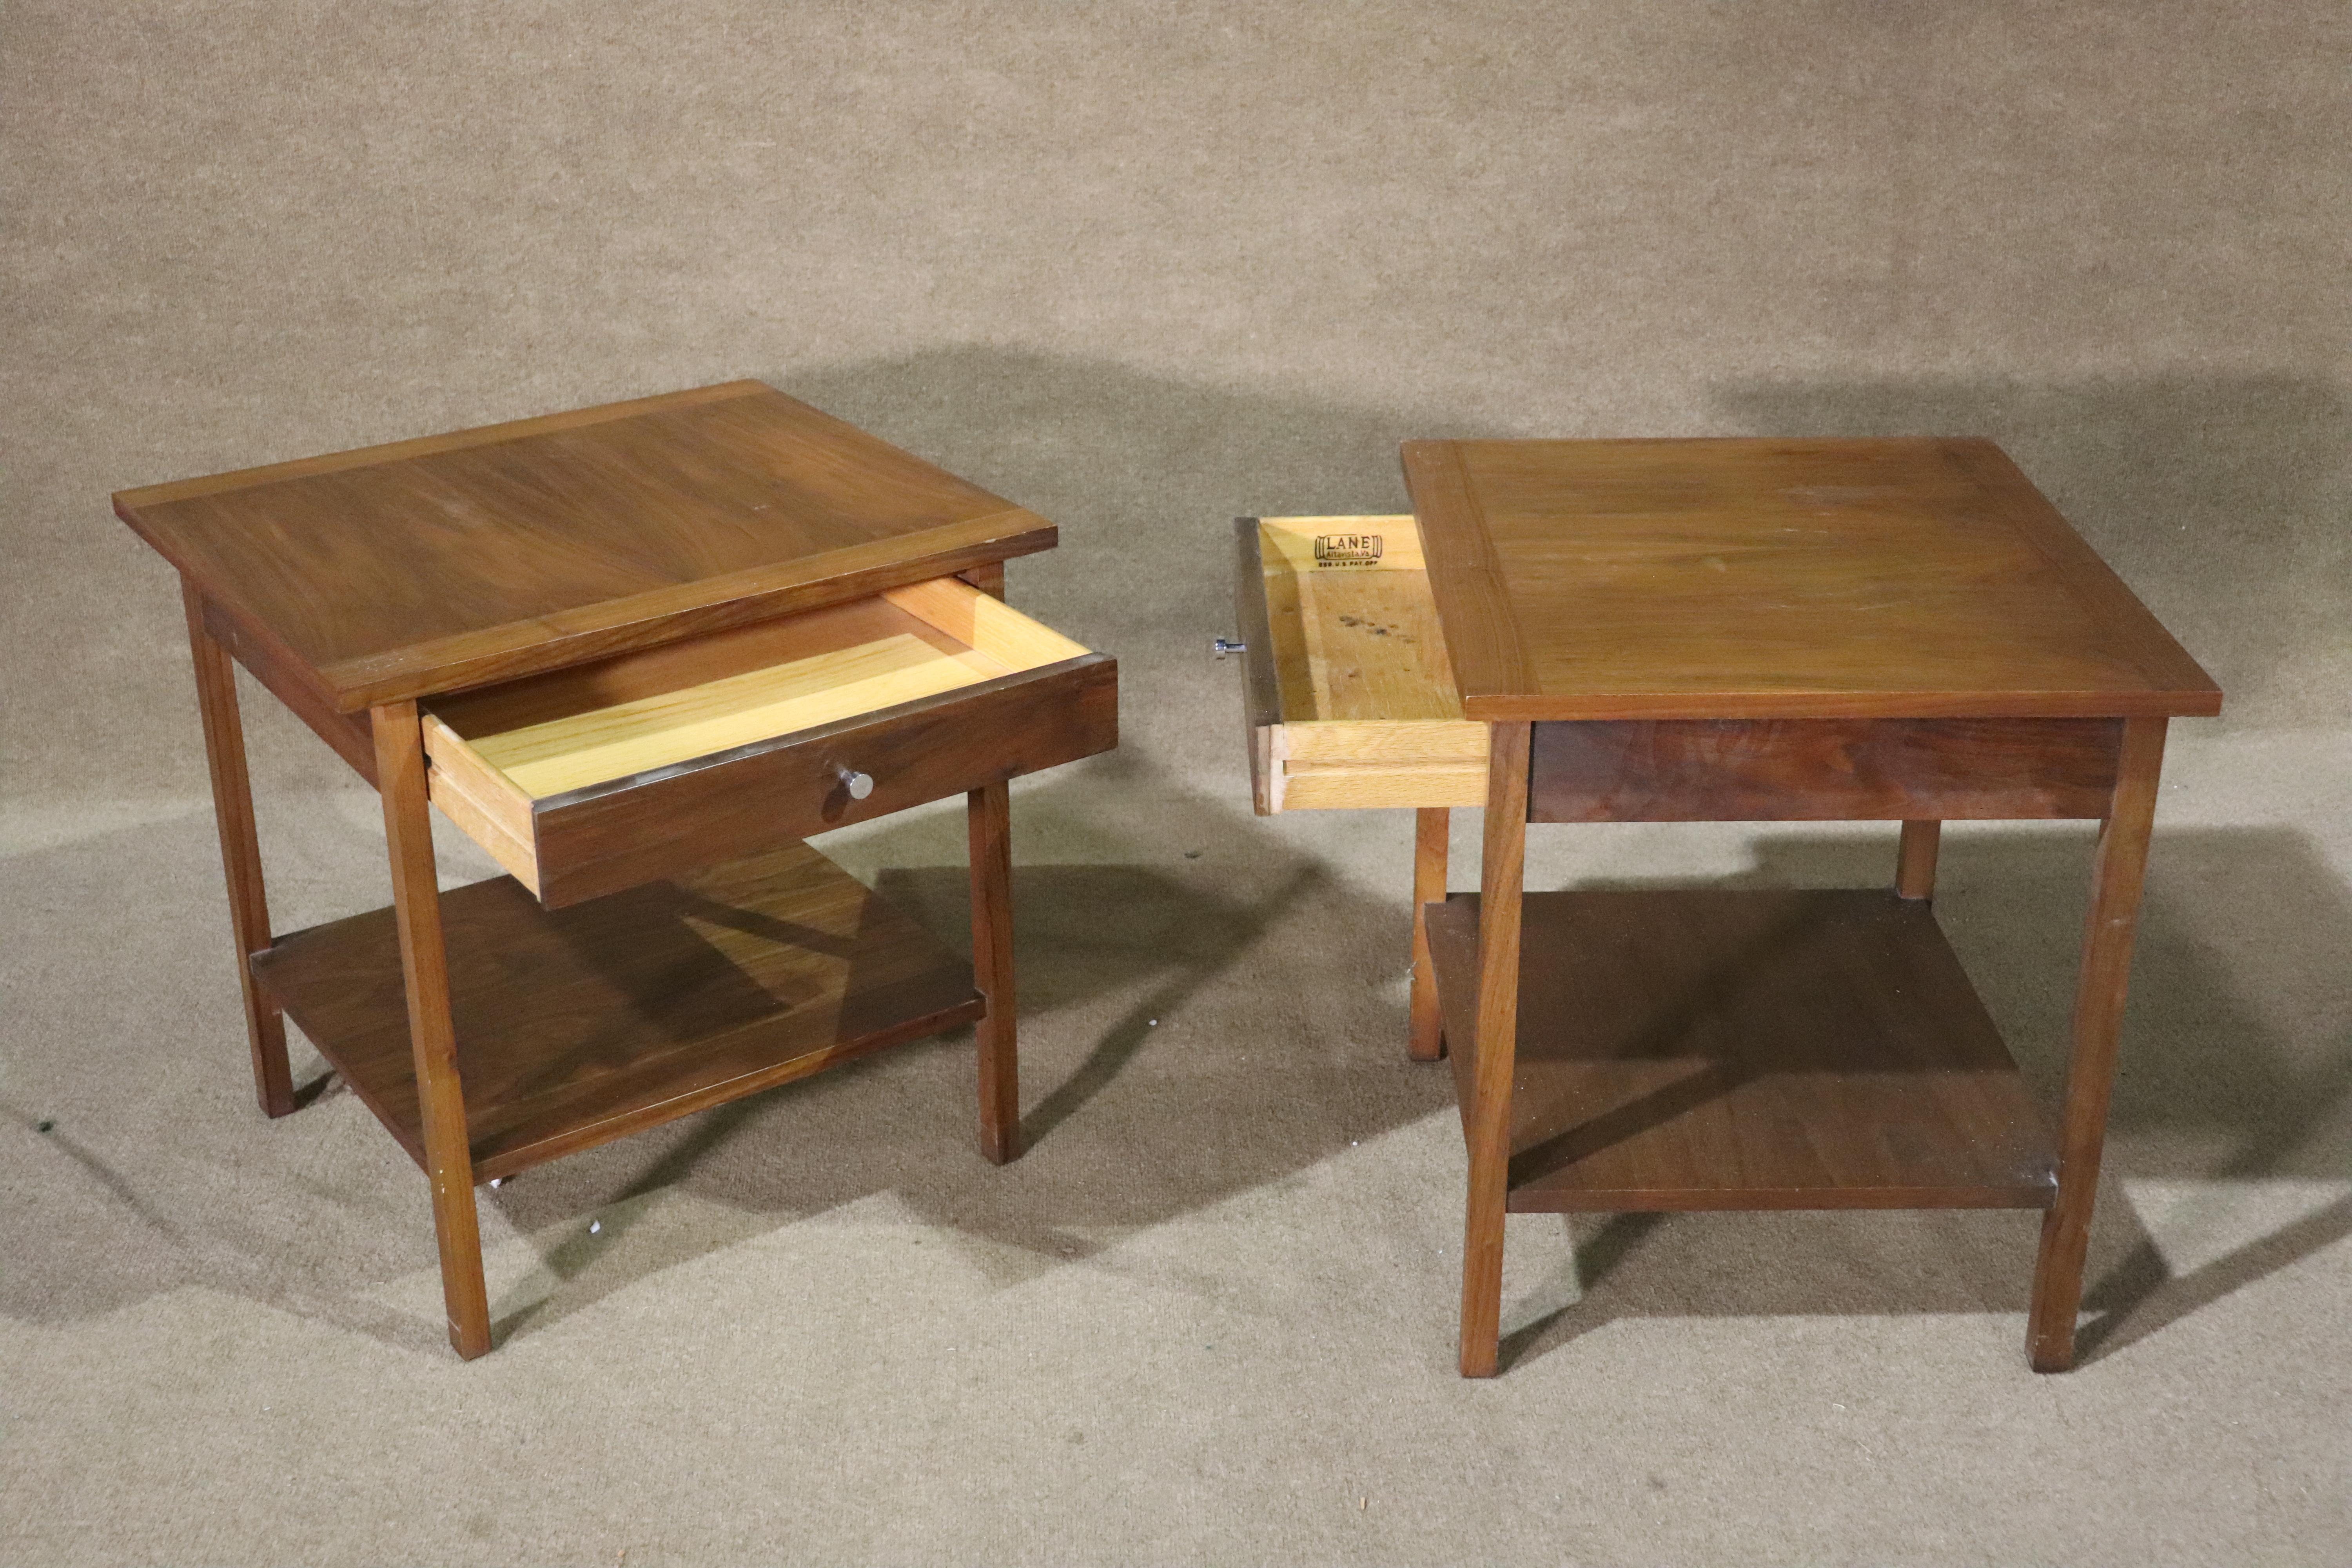 Tables d'appoint modernes du milieu du siècle par Lane Furniture avec un seul tiroir et une étagère inférieure.
Veuillez confirmer le lieu NY ou NJ